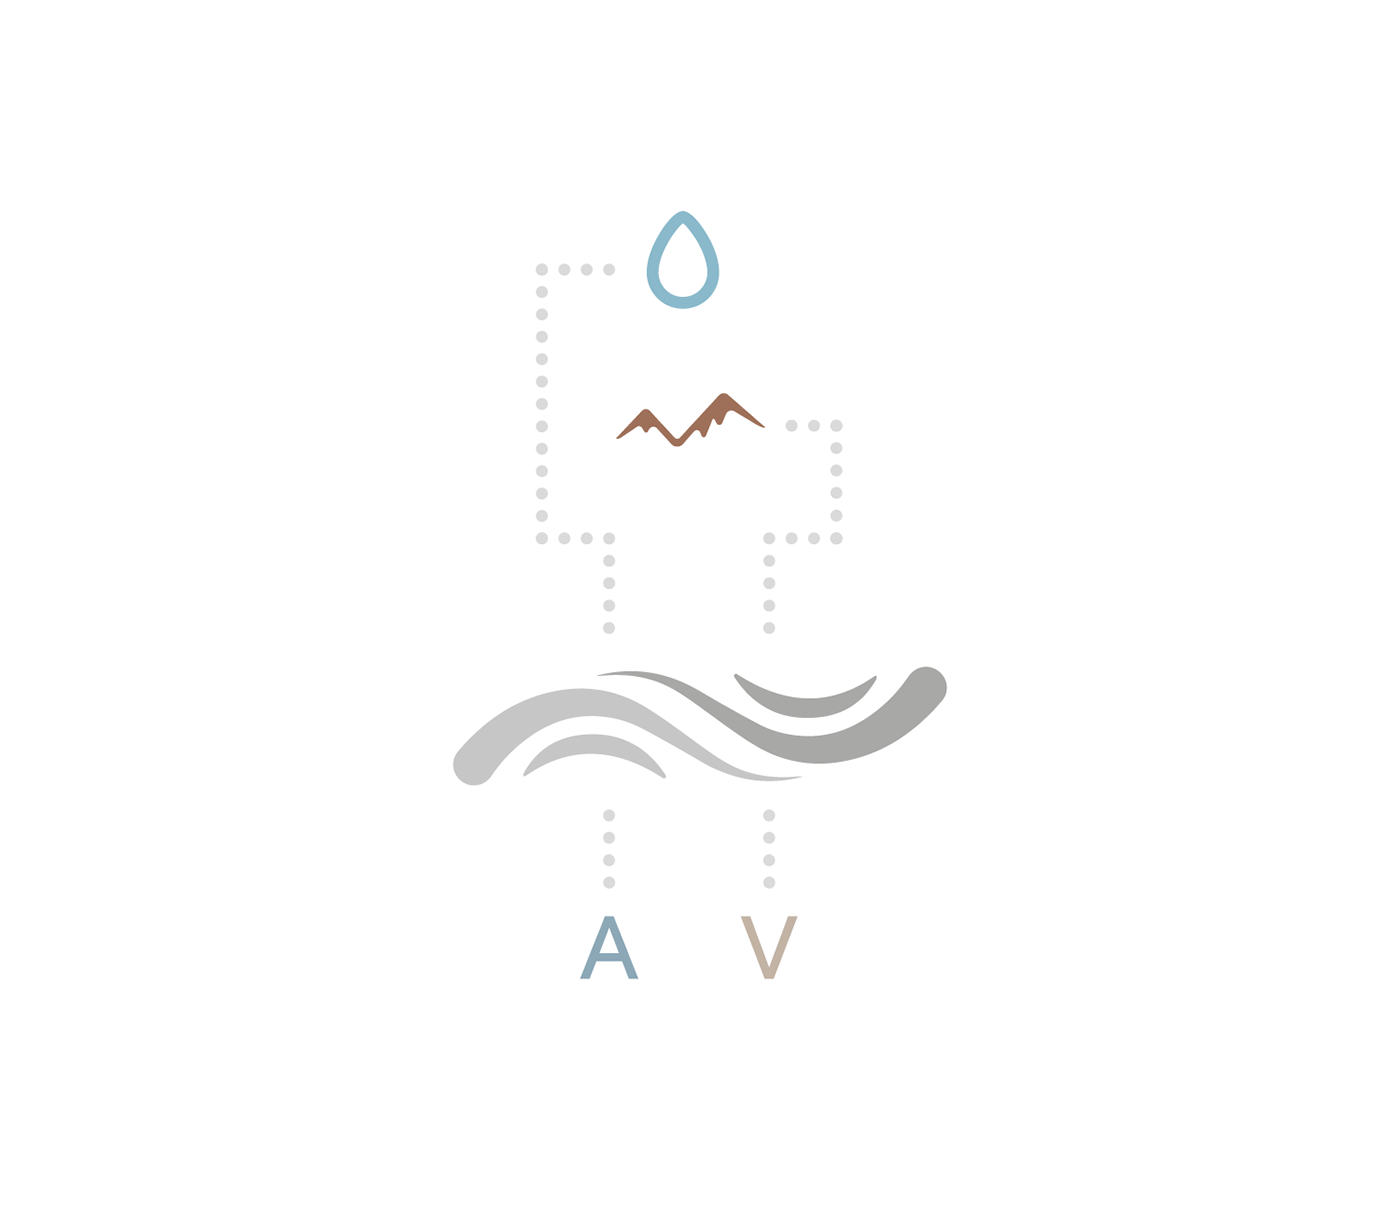 aquavali logo aqua vali brand Pool